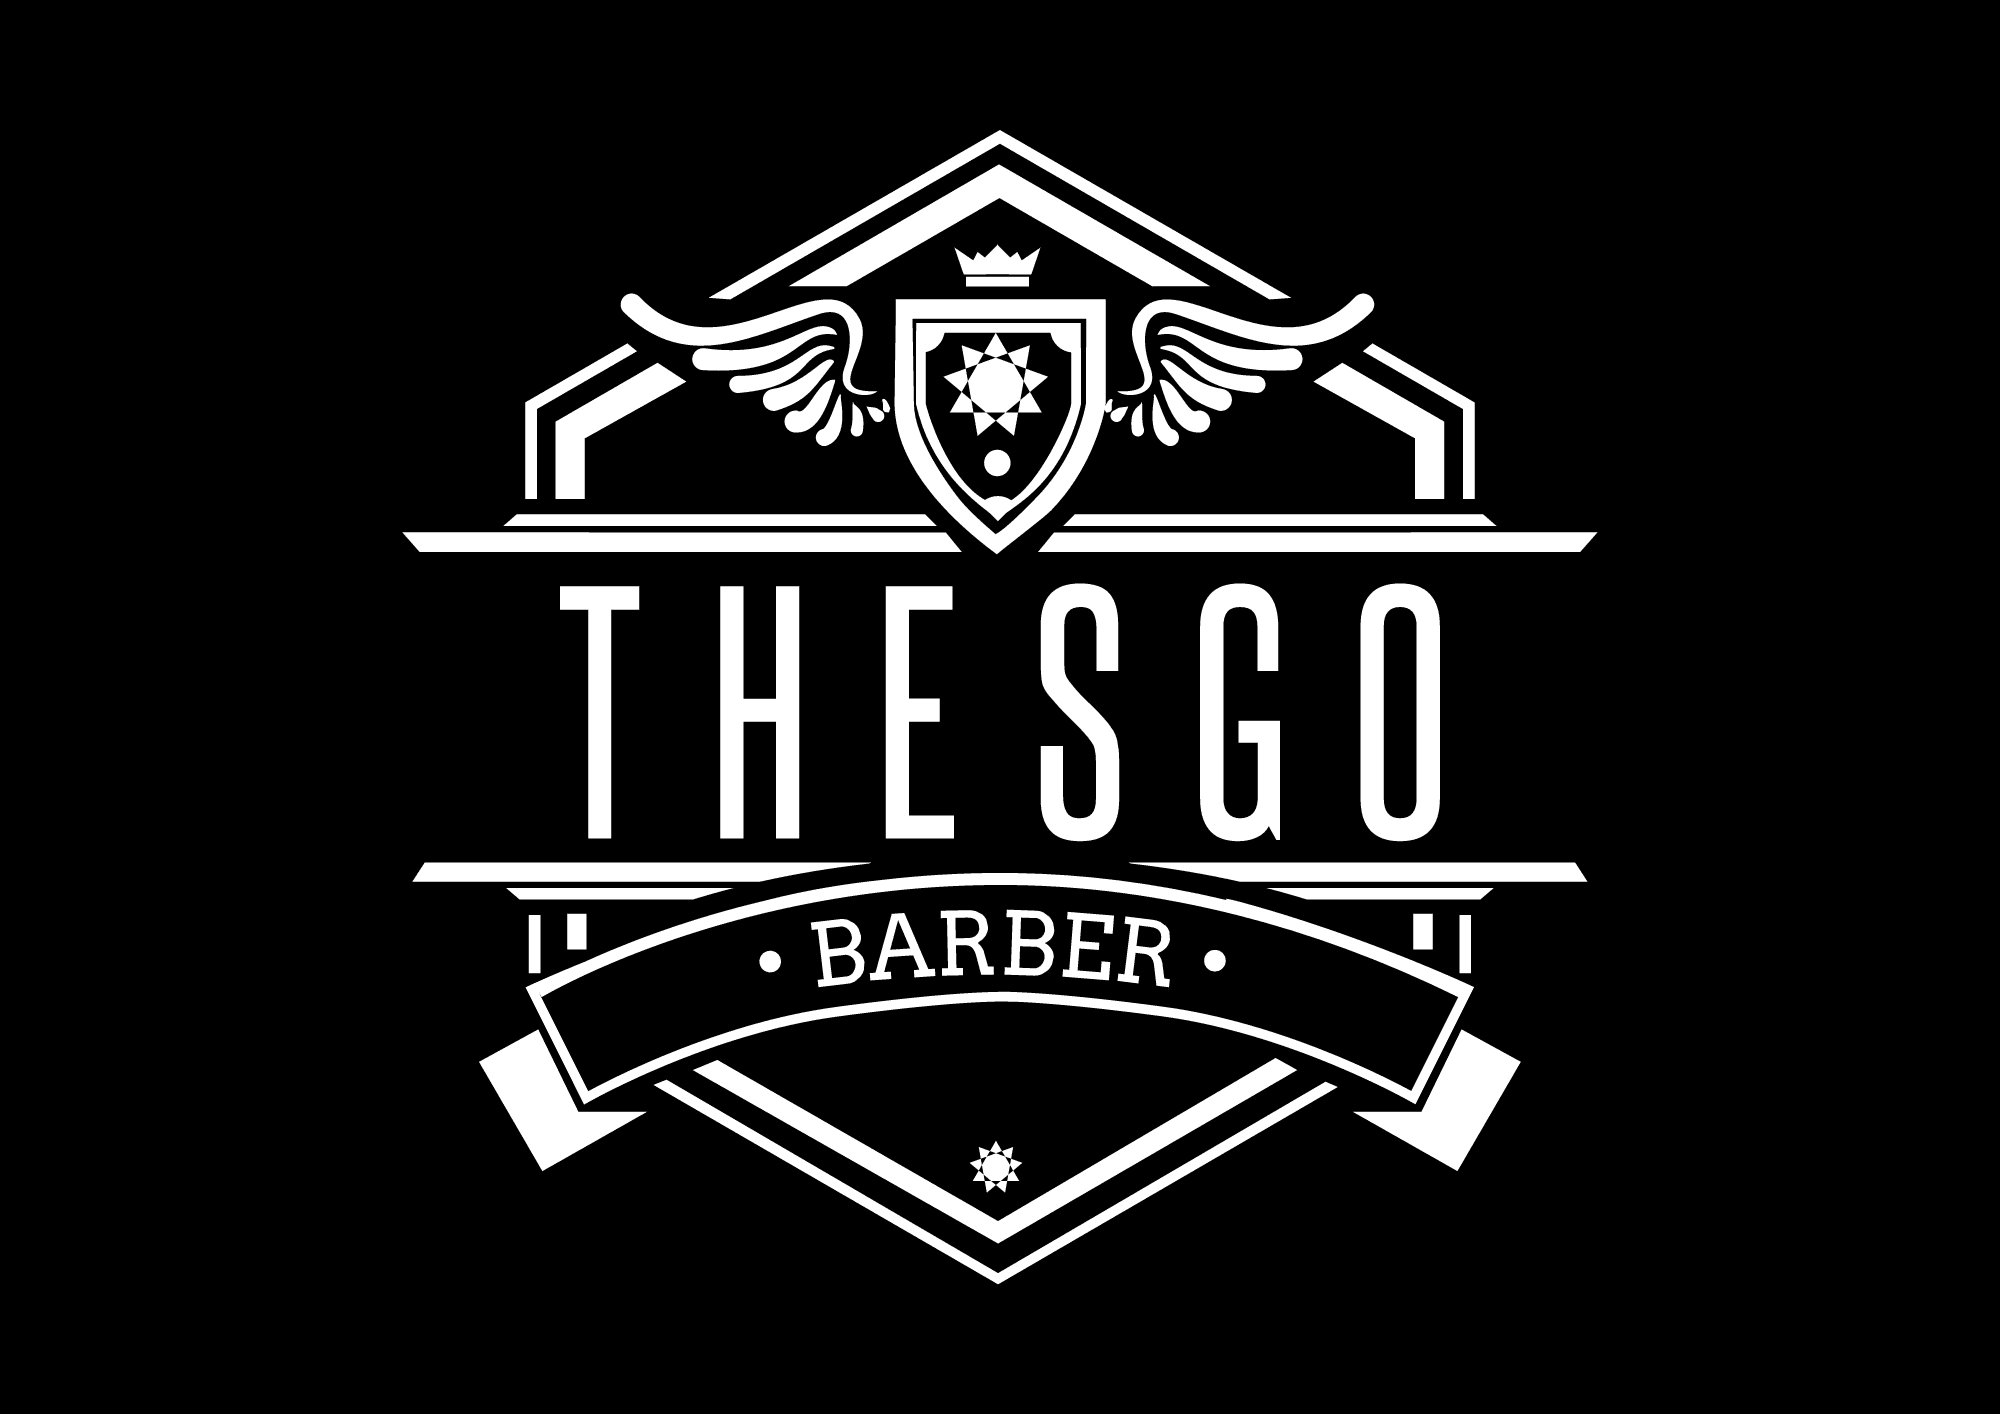 logo-barber-cosmeticospdf-okllo-1